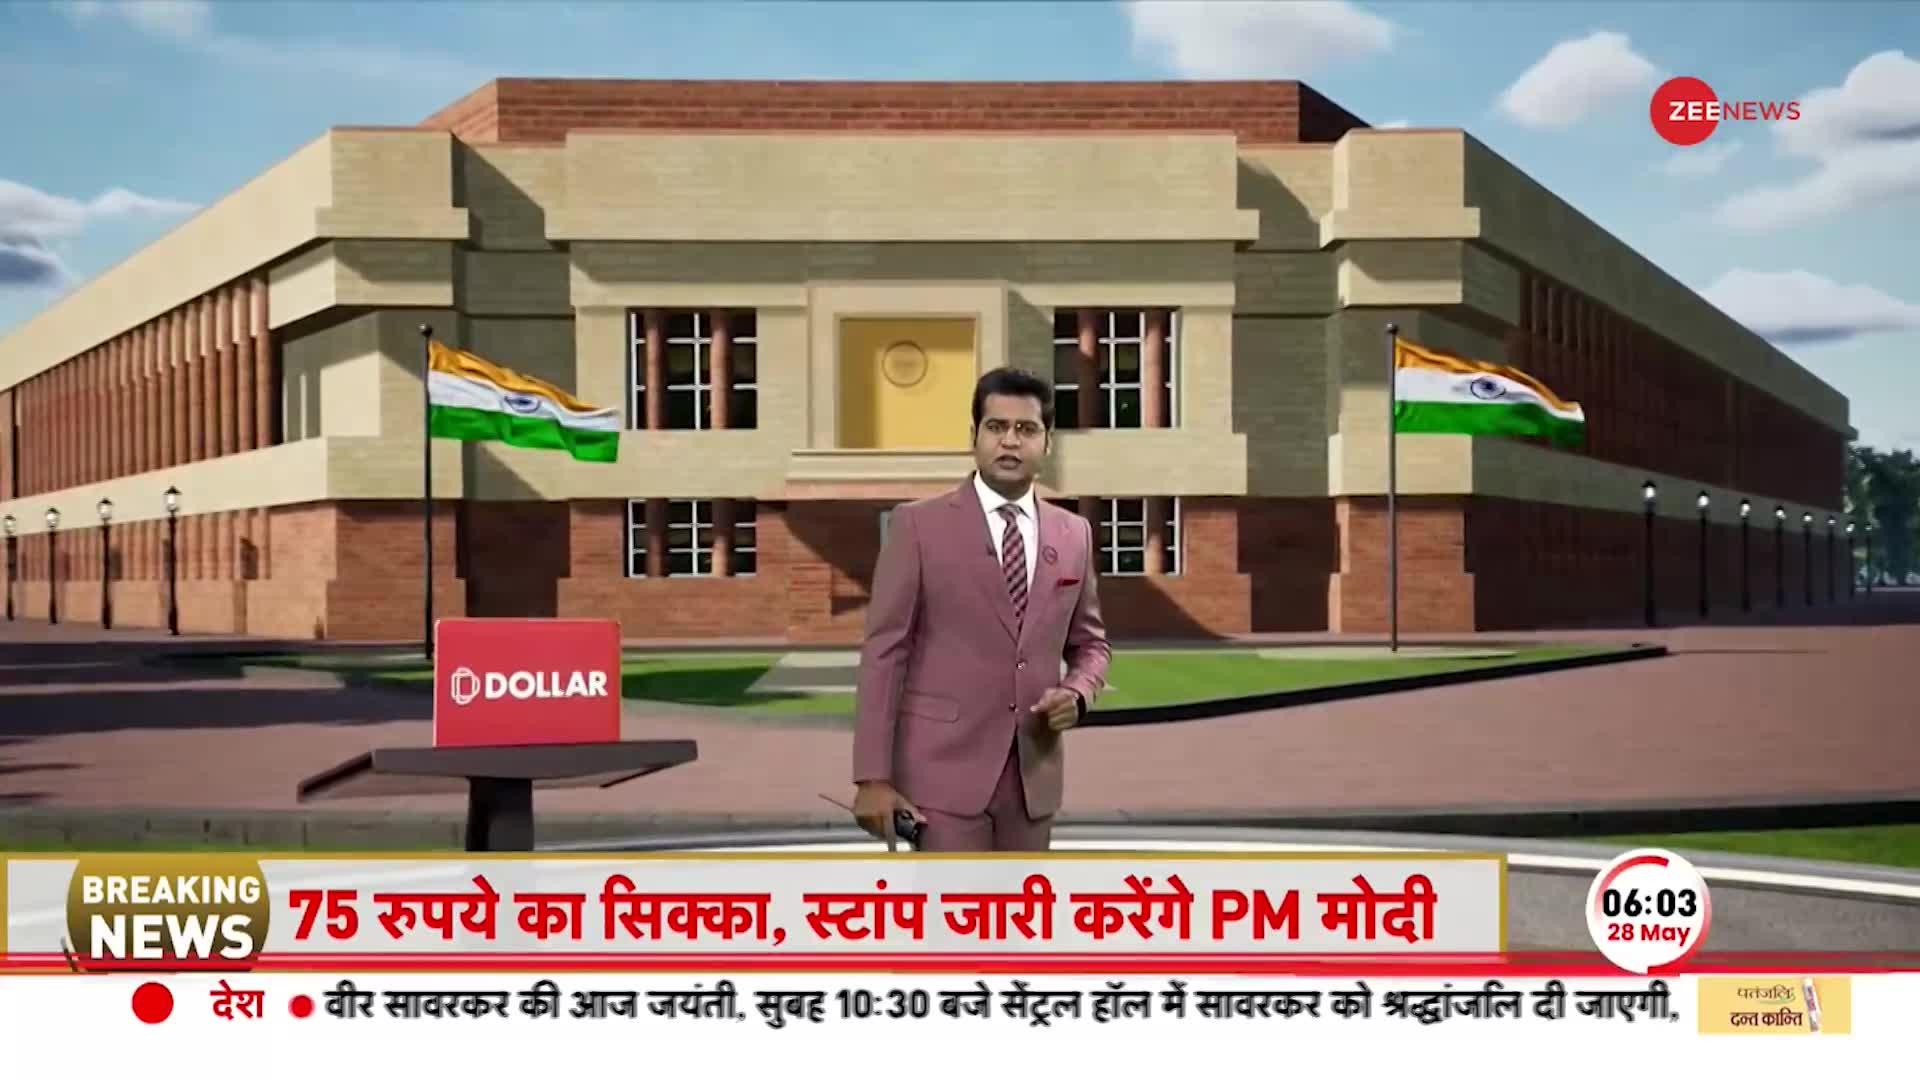 New Parliament: आज का दिन देश के लिए ऐतिहासिक, PM Modi करेंगे नई संसद का उद्घाटन | Breaking News